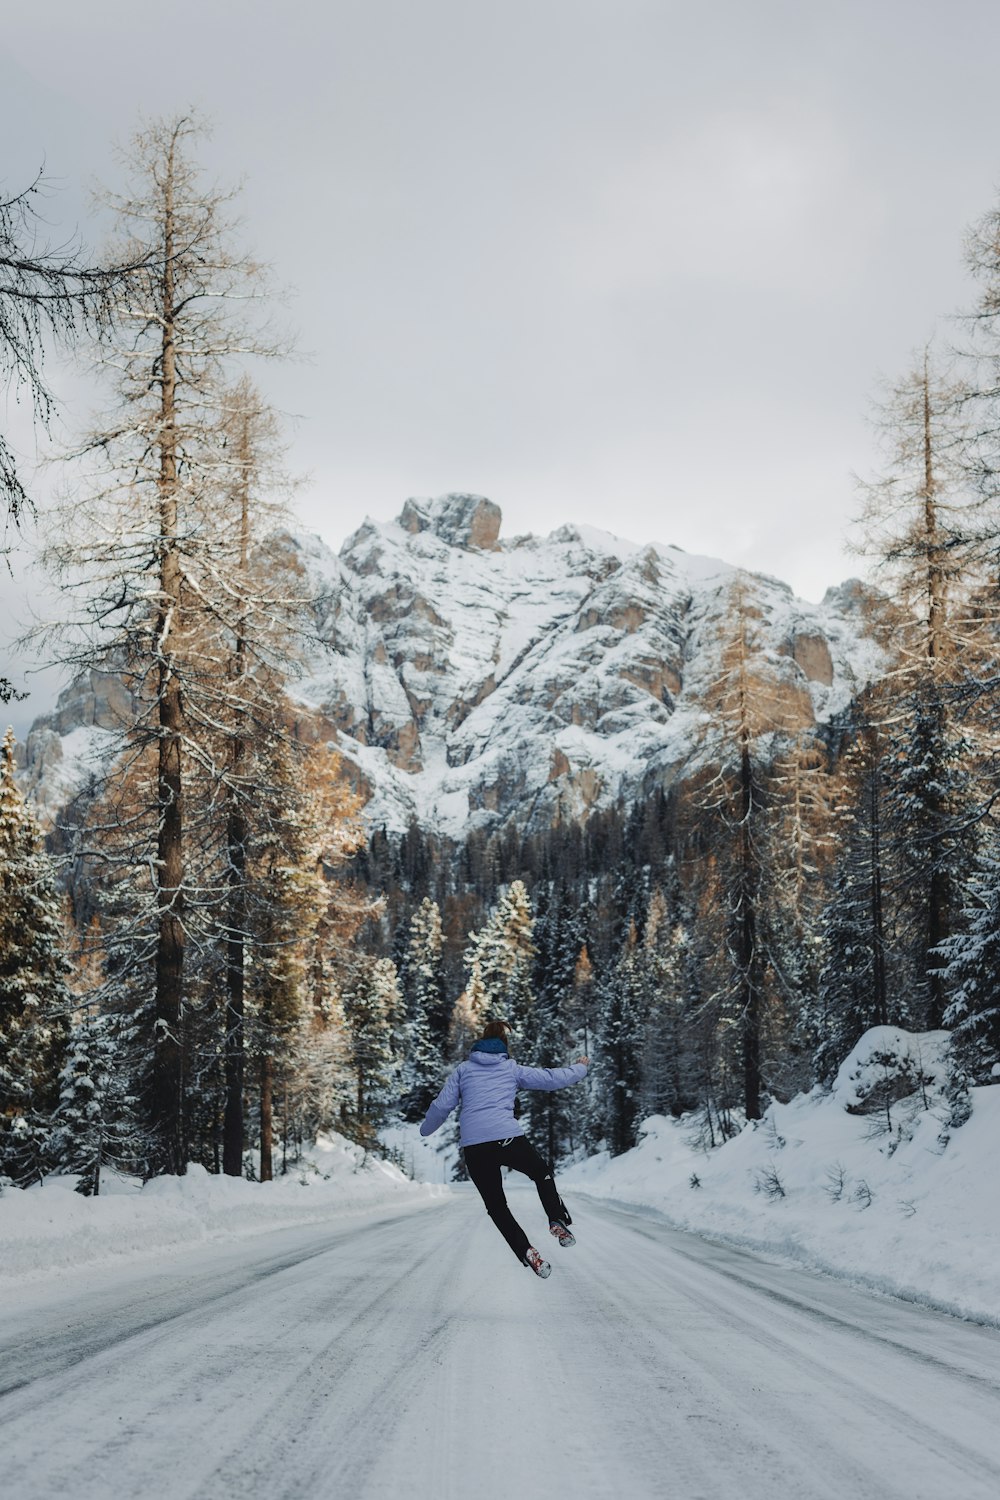 Una persona está esquiando por una carretera nevada